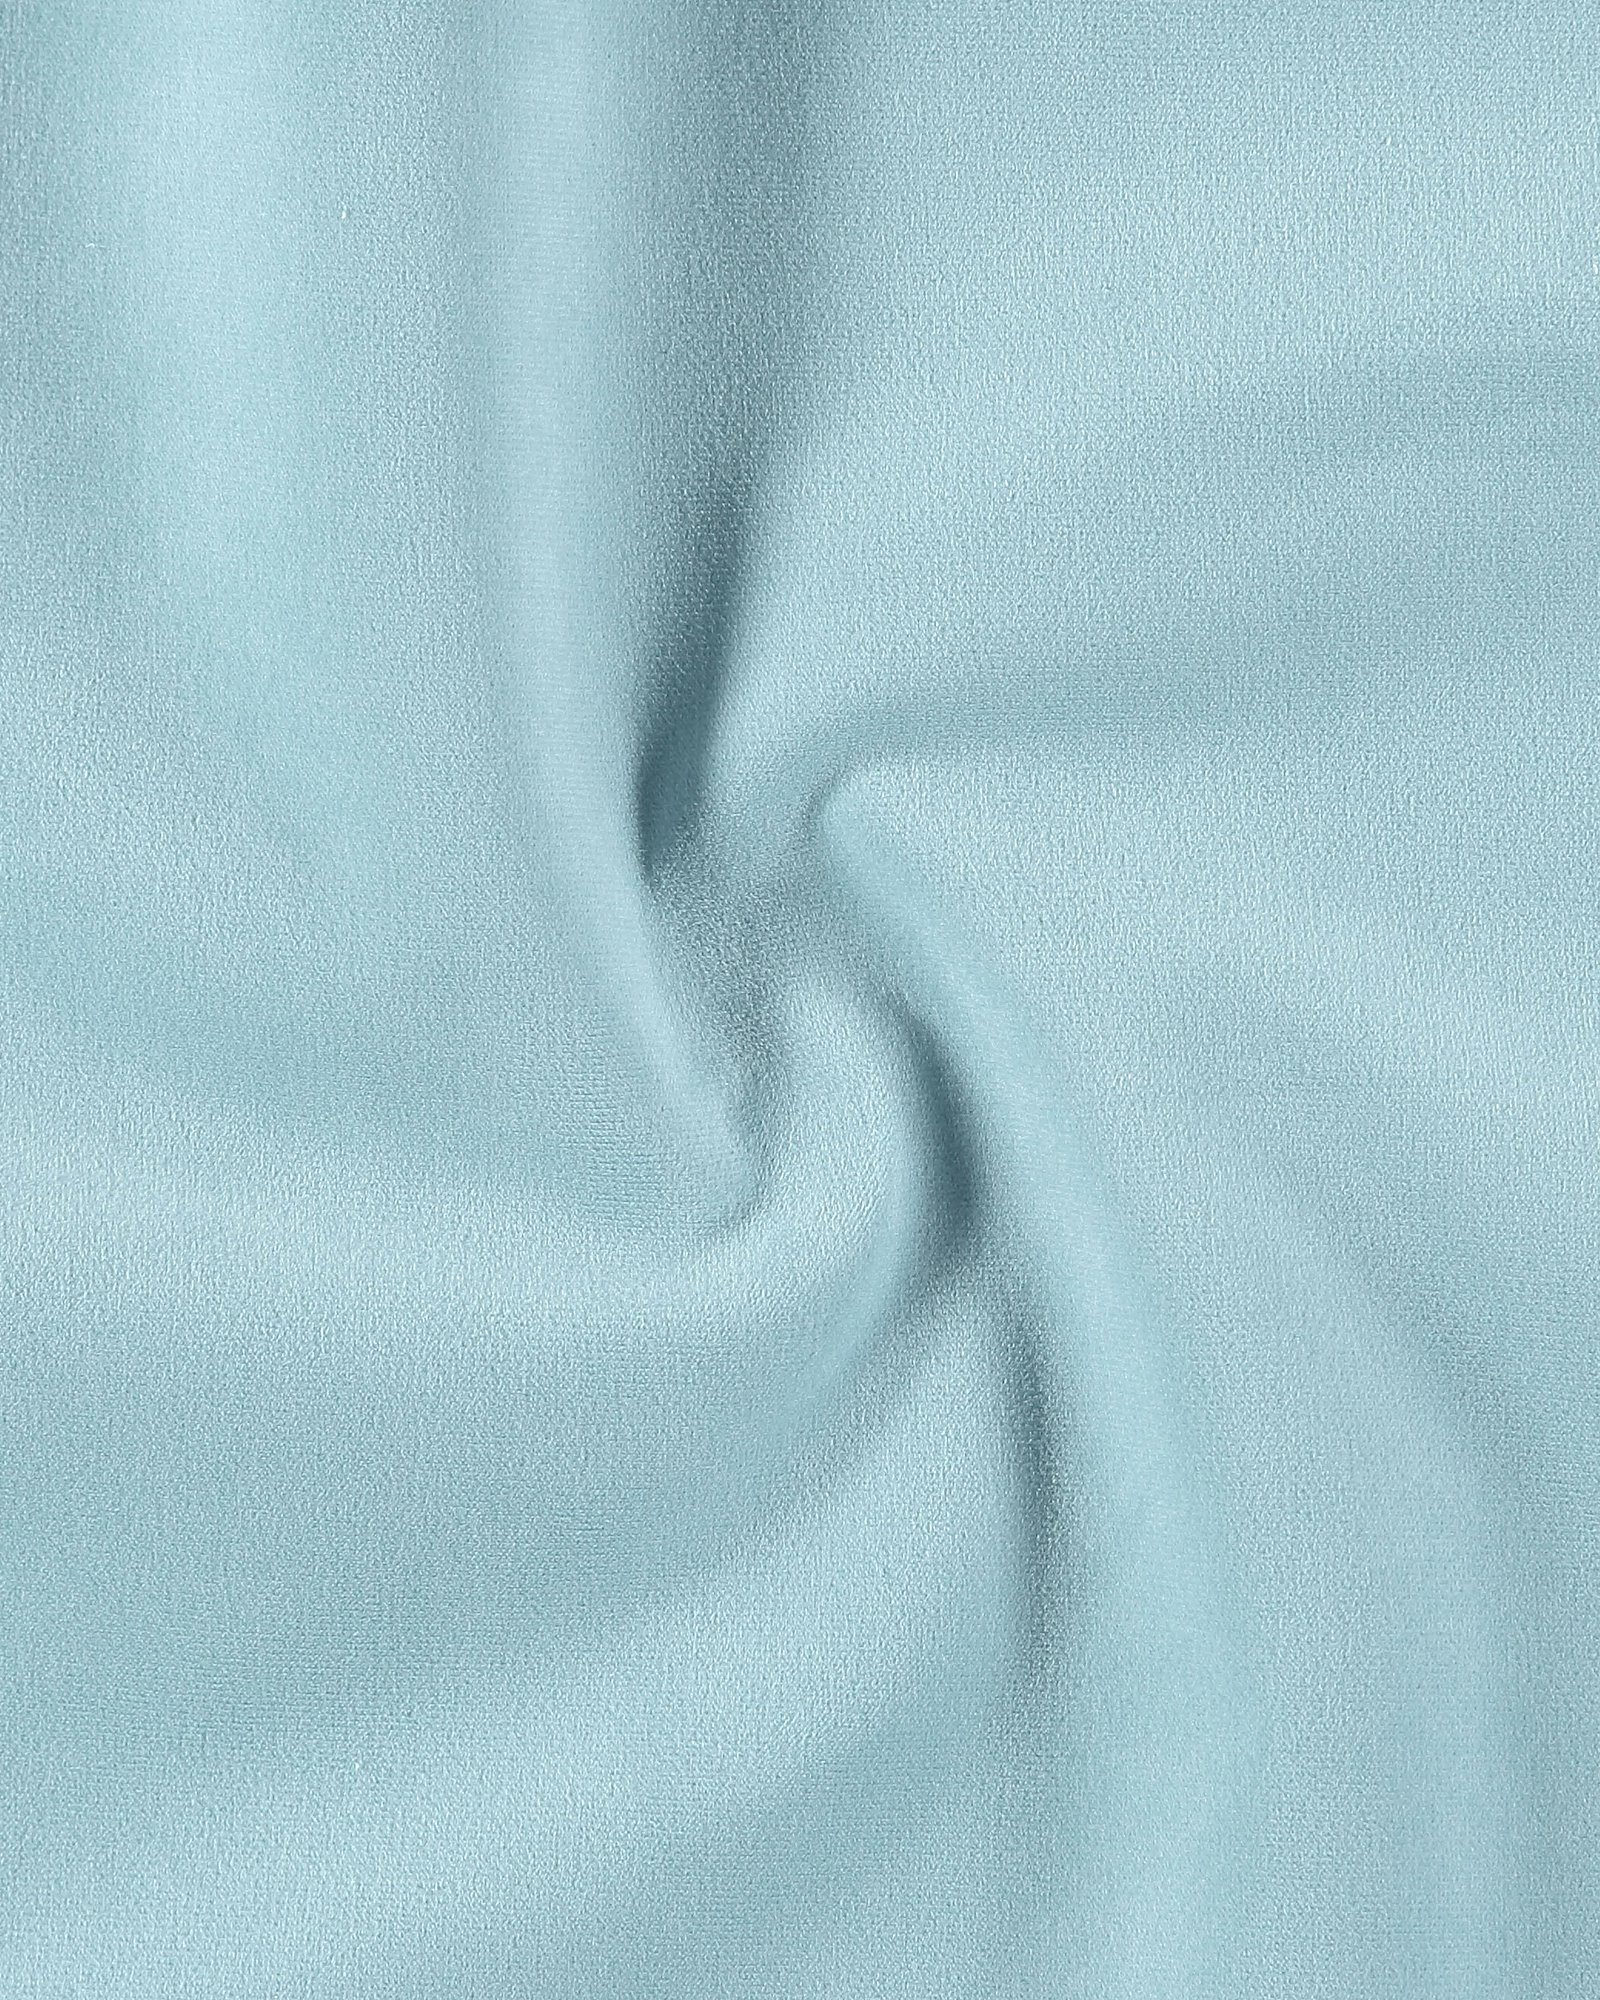 Quality Beige/Tan 100% Cotton Velvet Velour Fabric for Upholstery